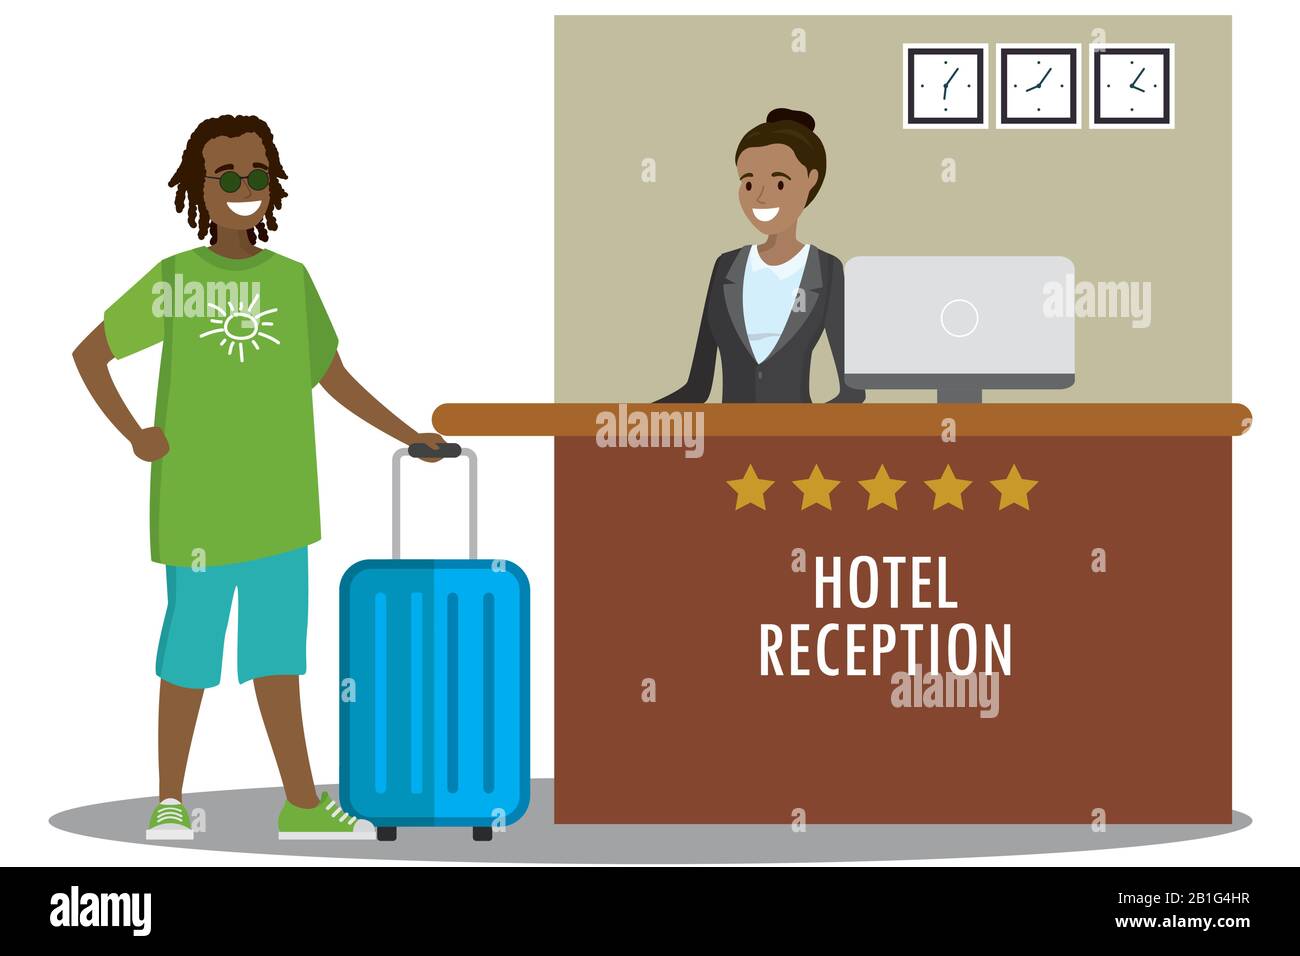 Die junge afroamerikanische Rezeptionistin und die afrikanische Touristin stehen an der Rezeption. Reisen, Gastgewerbe, Hotelbuchungskonzept.Cartoon Flat Vector Stock Vektor